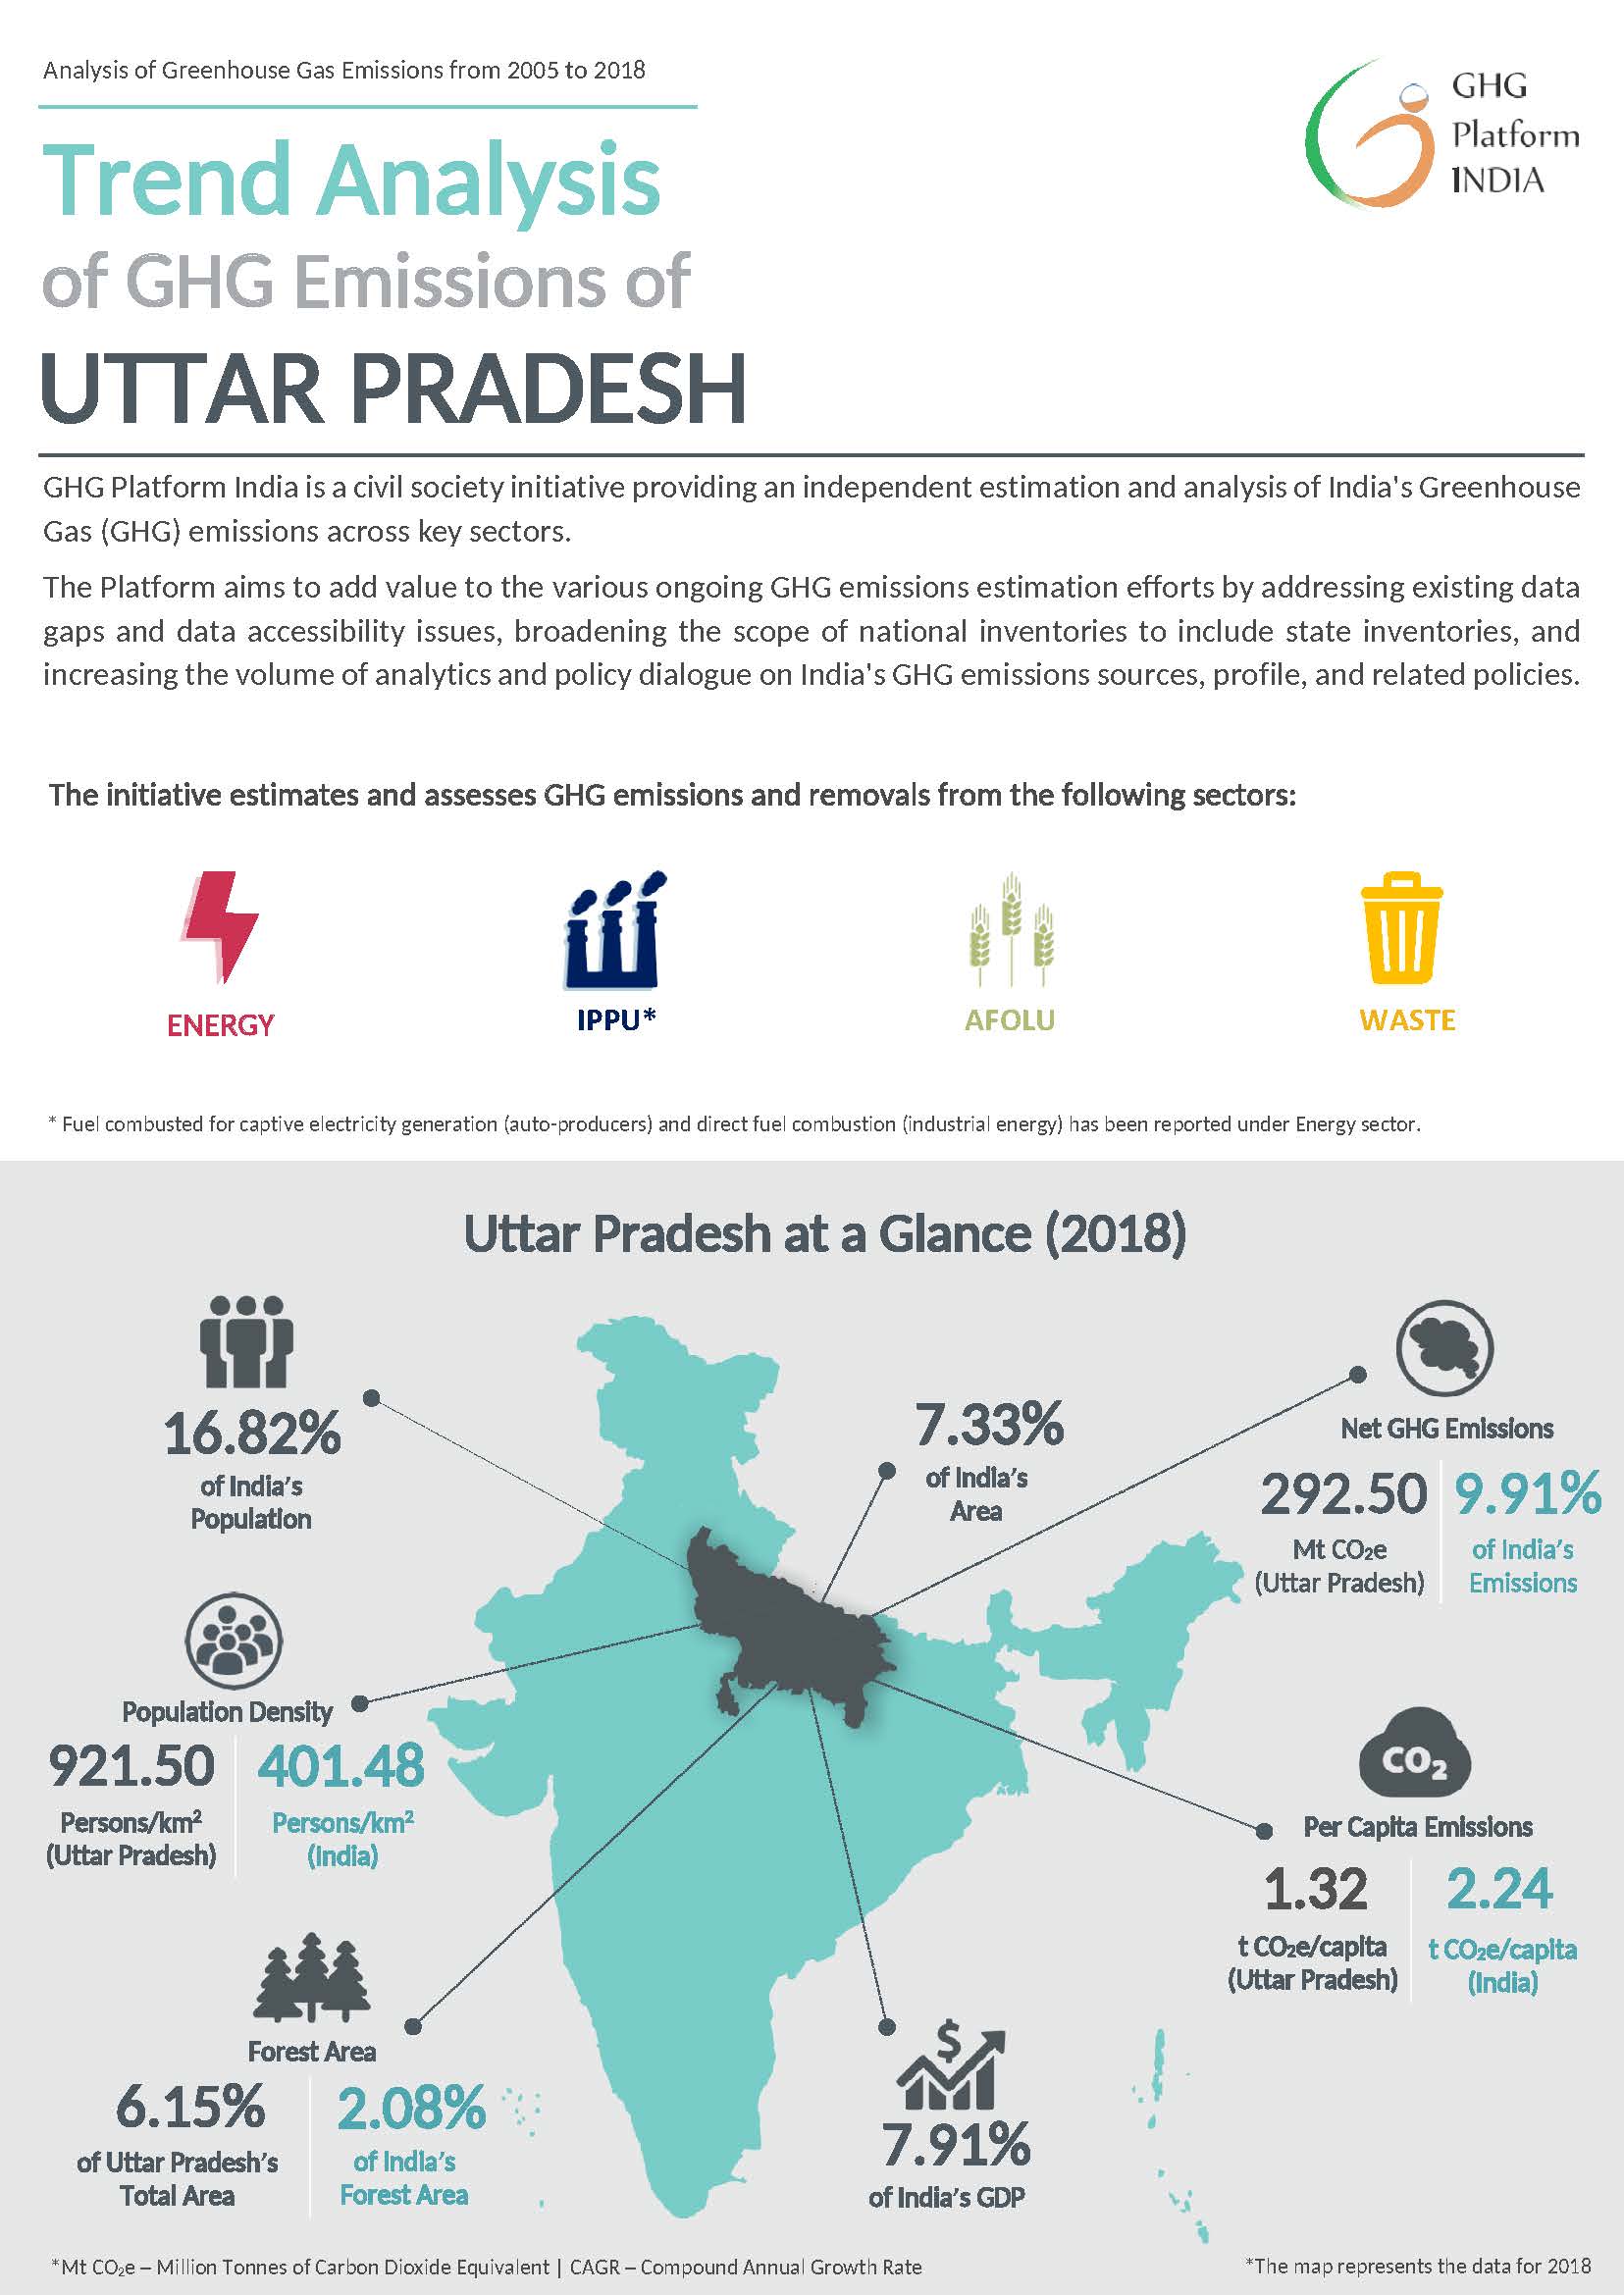 GHGPI_Trend Analysis_2005 to 2018_Uttar Pradesh_Sept'22